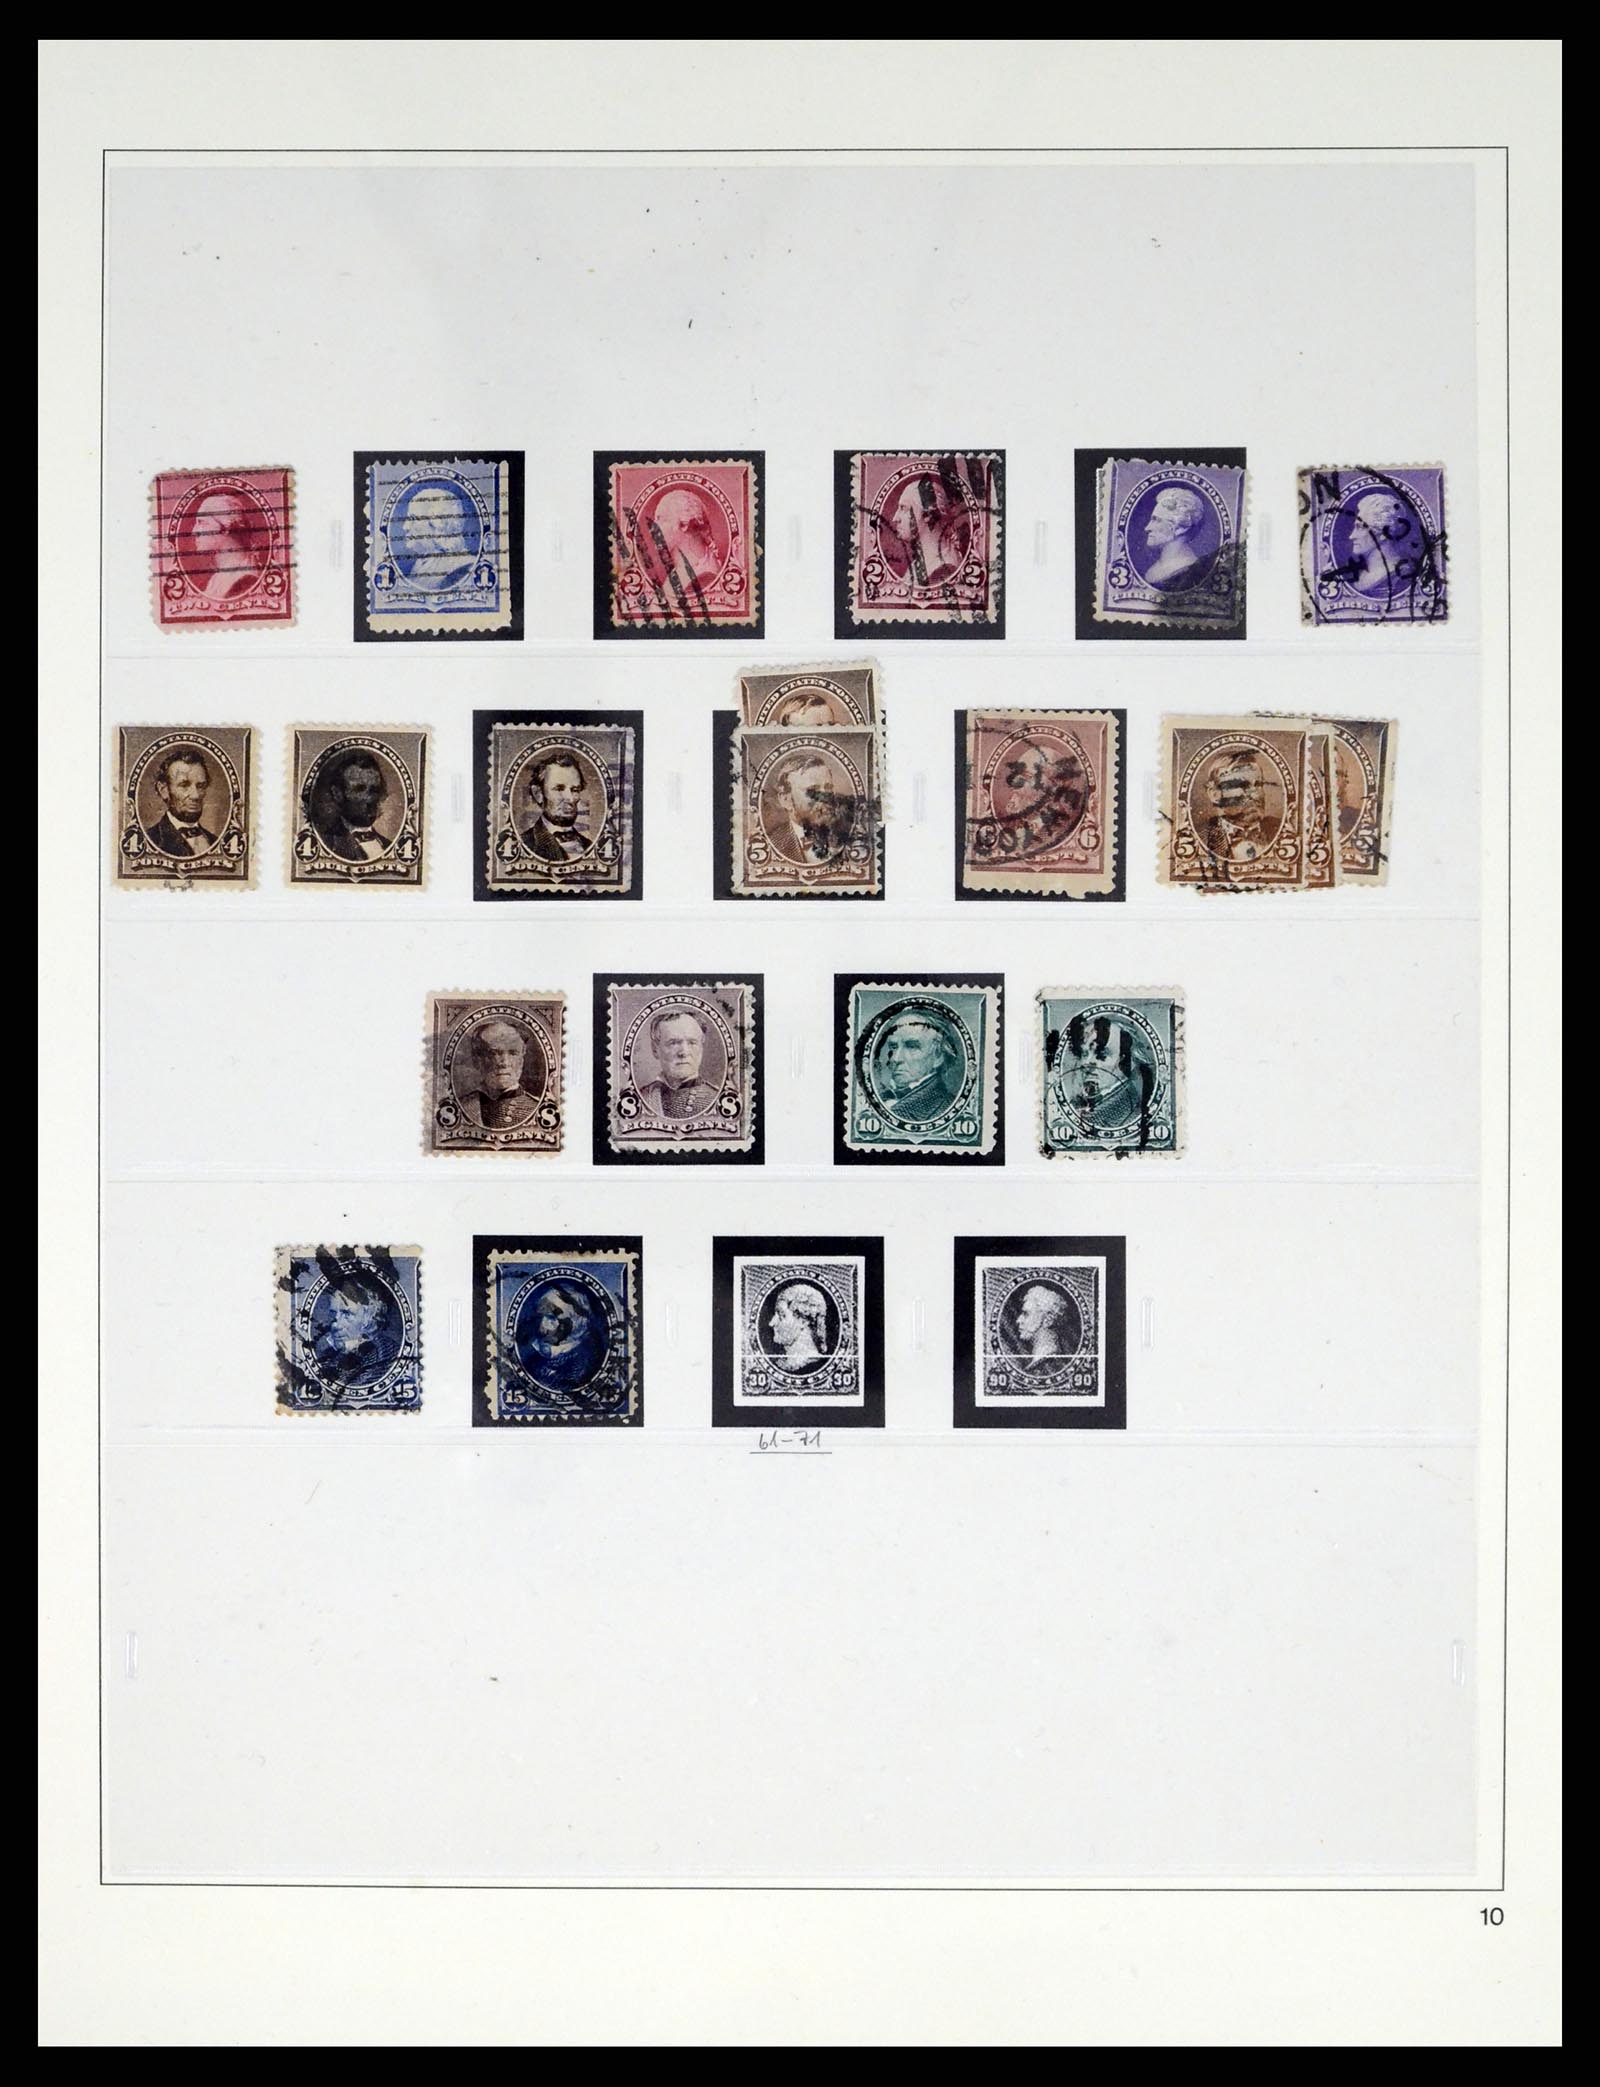 37551 010 - Stamp collection 37551 USA 1851-2001.